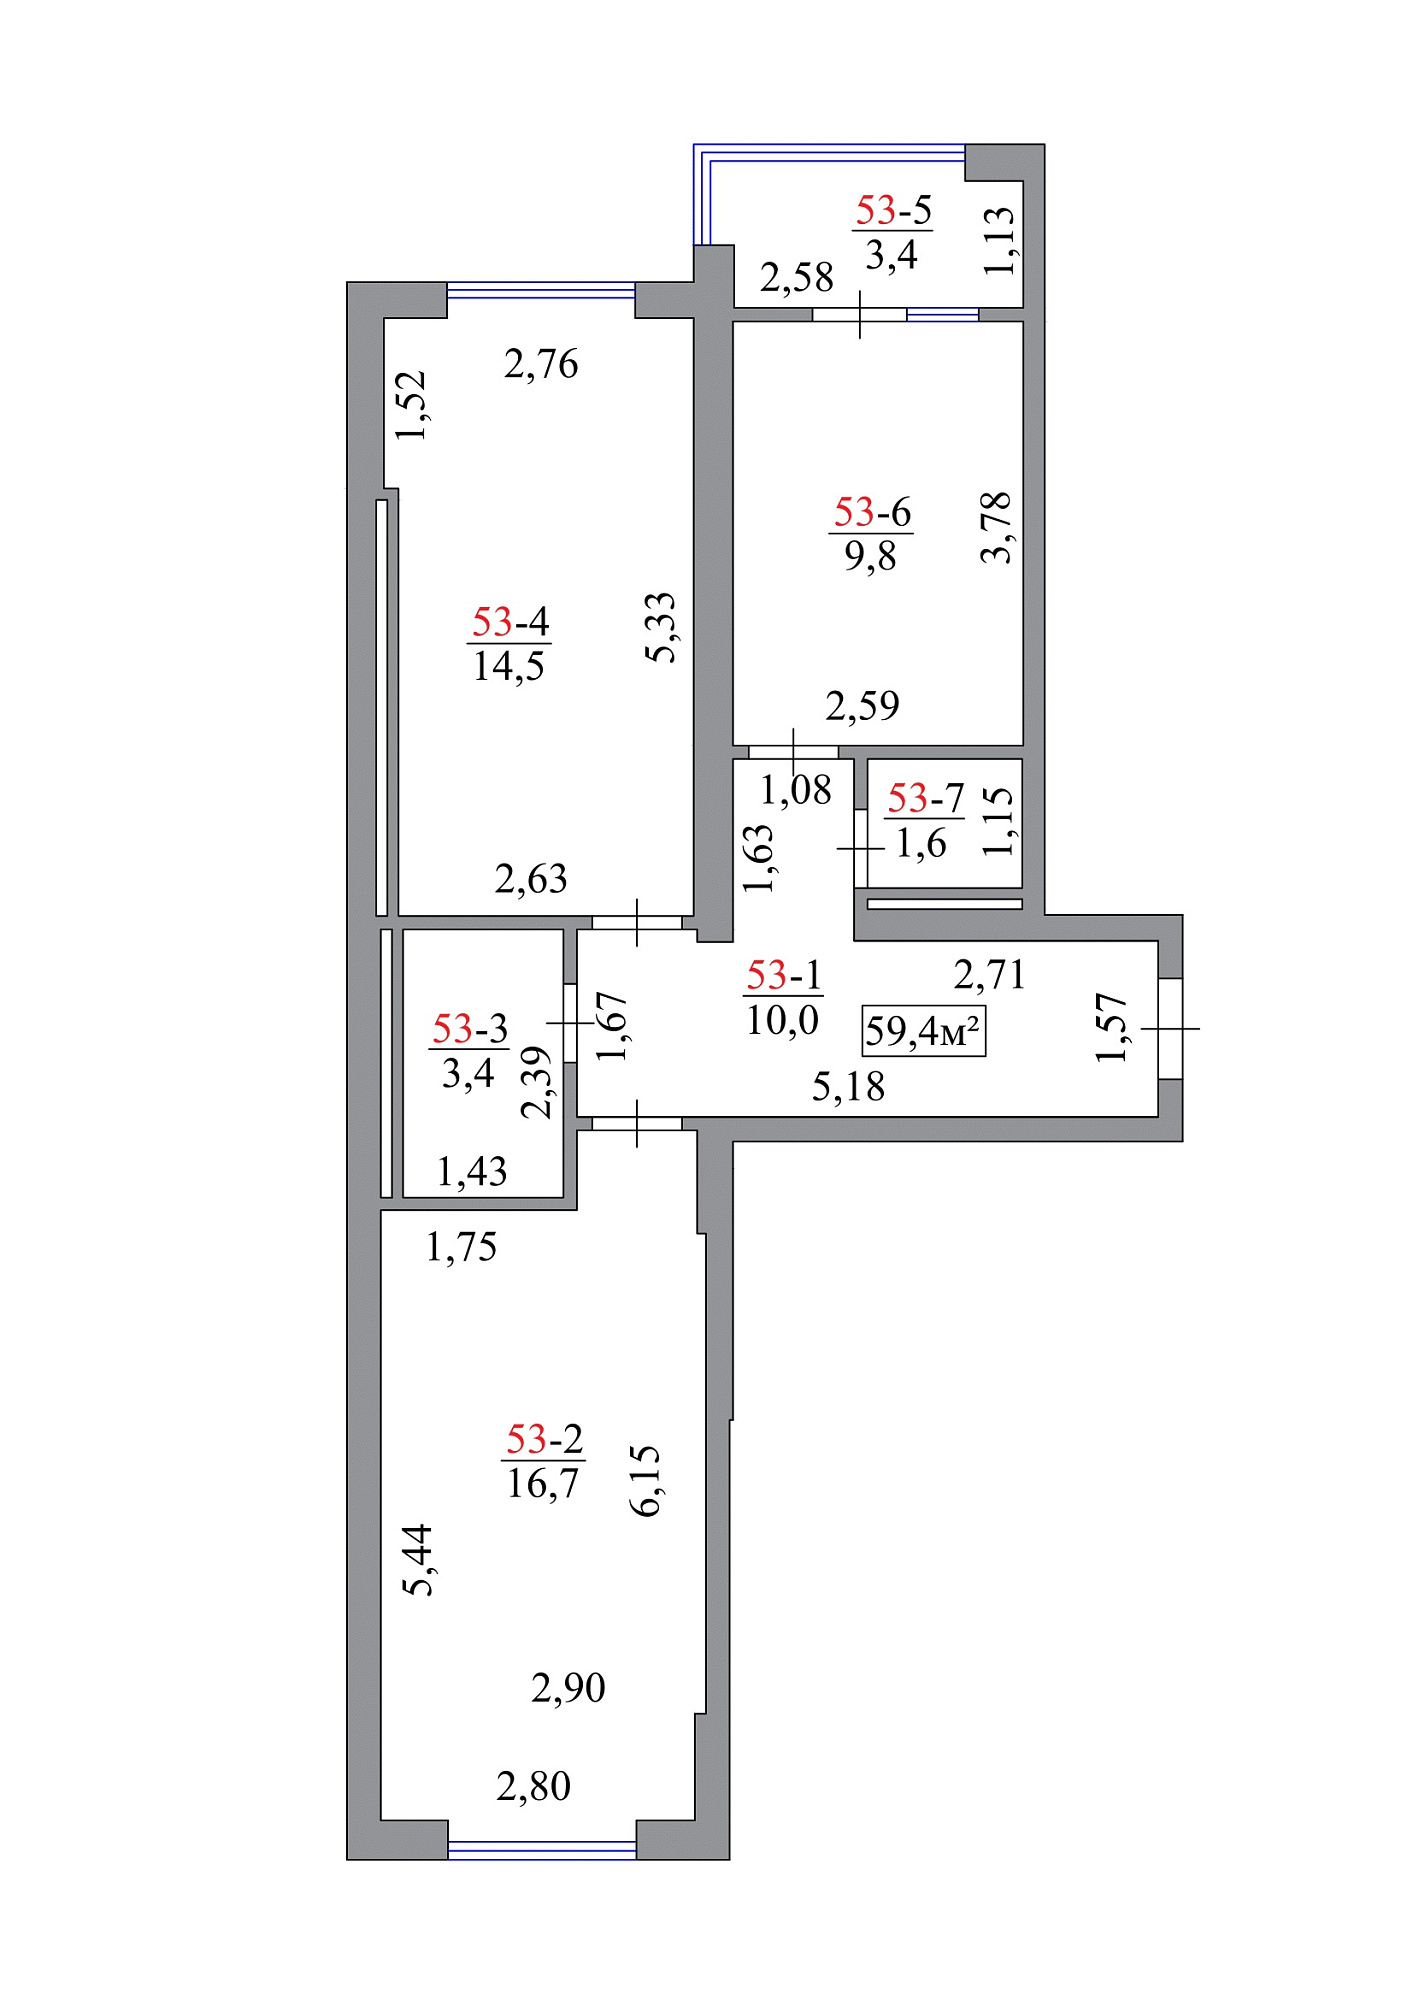 Планировка 2-к квартира площей 59.4м2, AB-07-06/00048.